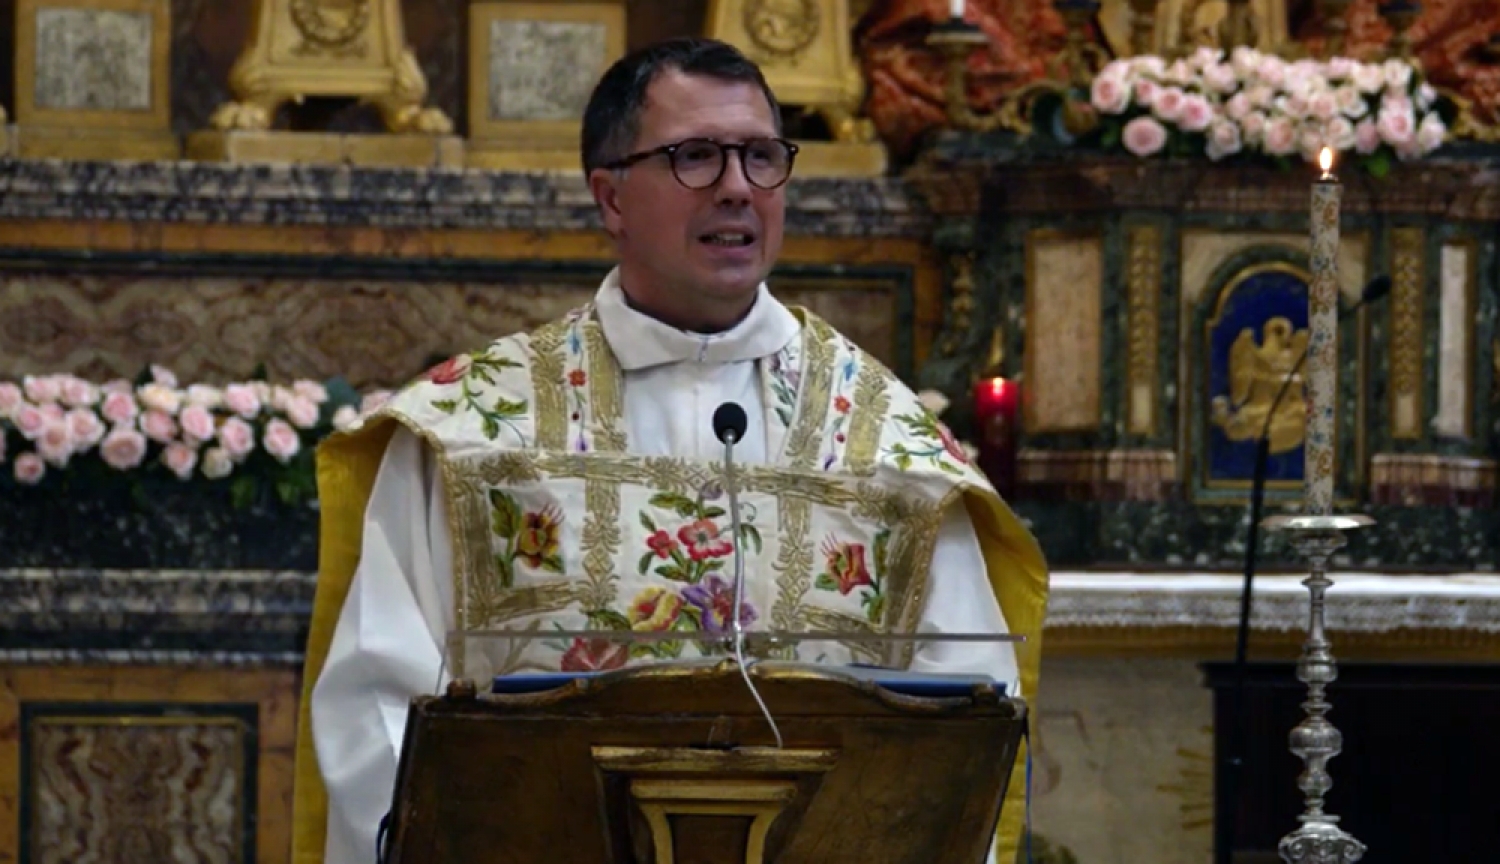 Don Pedretti per Santa Maria in Portico: “Dio continua a costruire sapientemente le nostre vite”